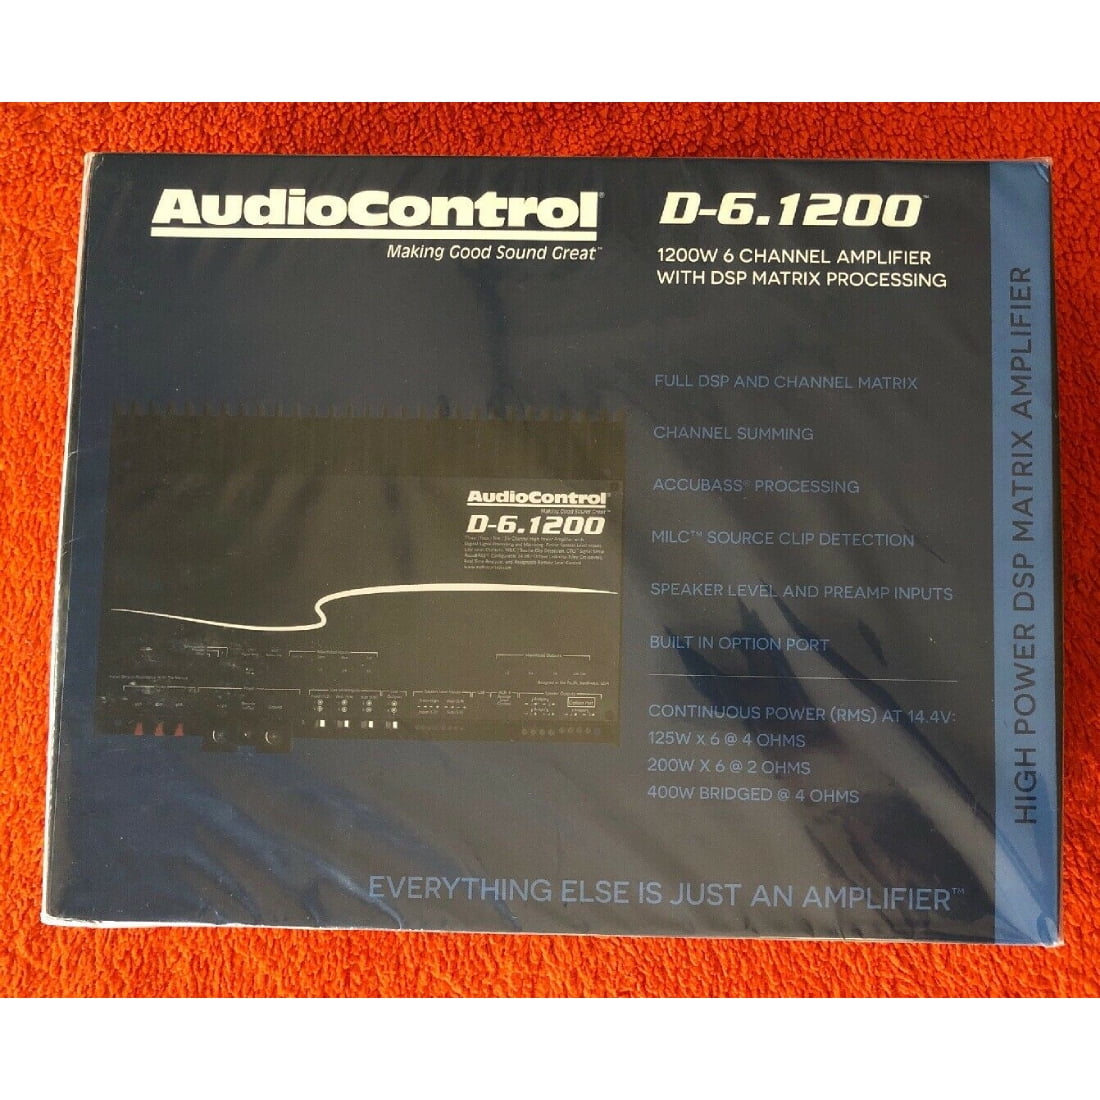 けまで AudioControl D-6.1200 (UPC 851523007218) :B08MZBS2D2:バリューセレクション 通販  しておりま